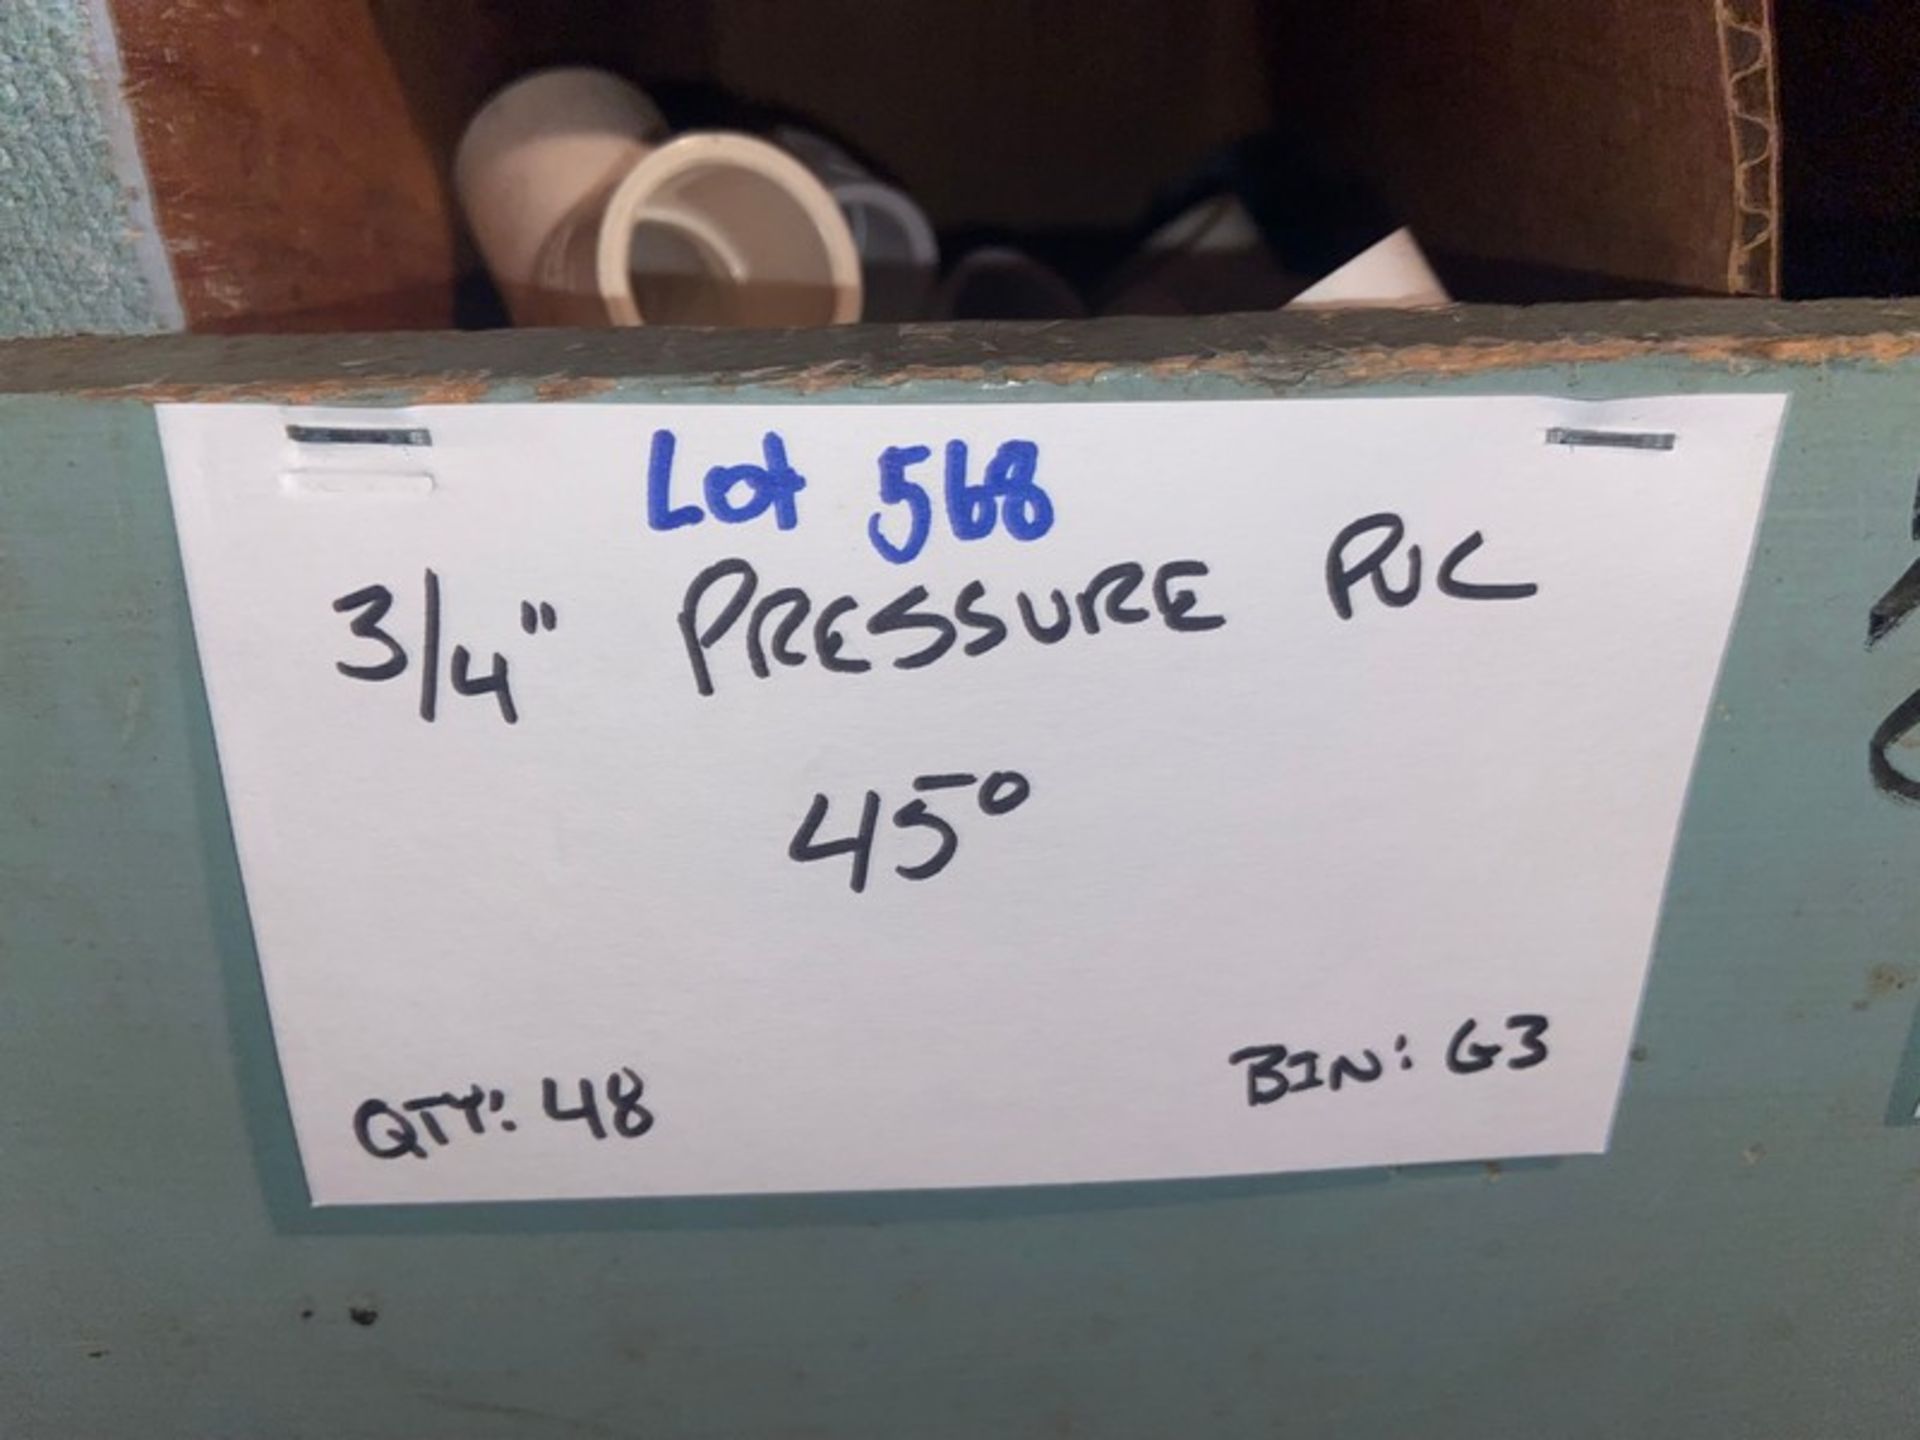 (15) 3/4” Pressure PVC Stree5 (Bin:G3), Includes (48) 3/4” Pressure PVC 45’ (Bin:G3) (LOCATED IN - Bild 8 aus 8